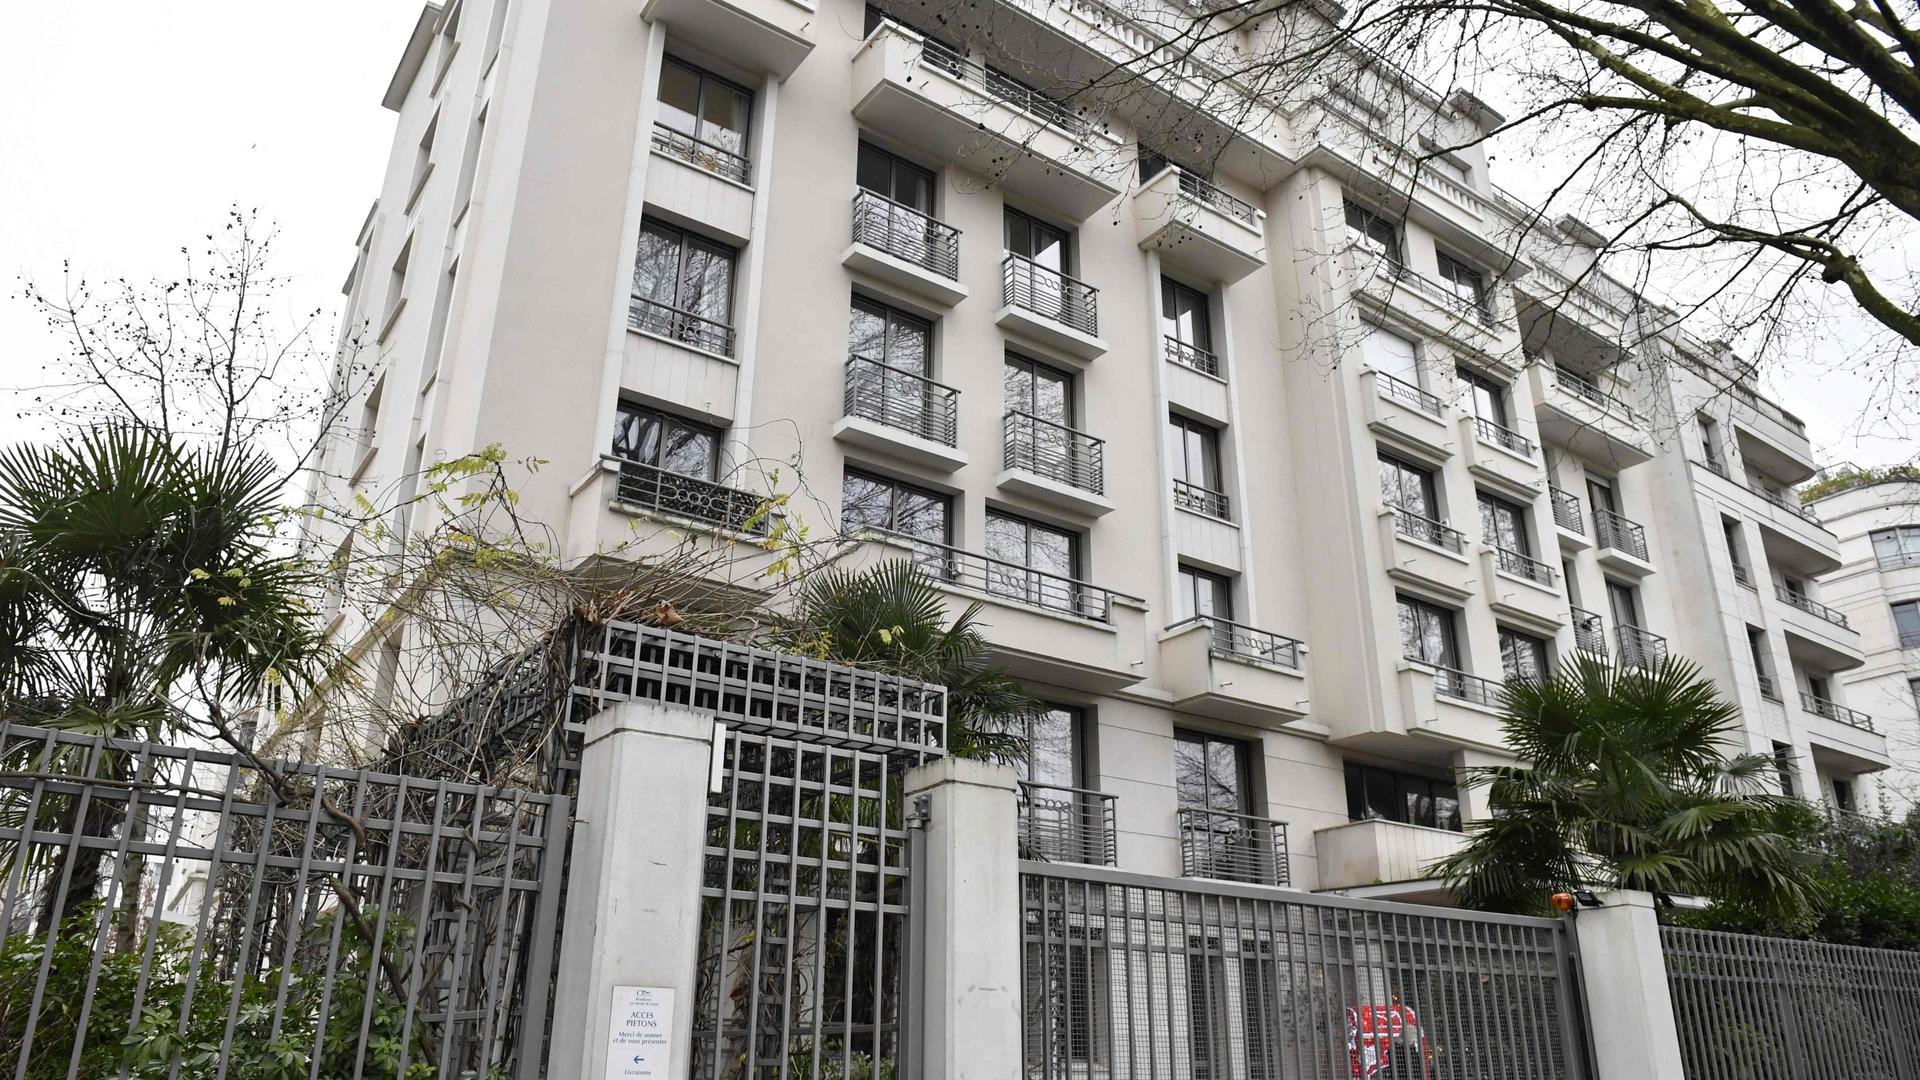 La résidence Orpea «Les Bords de Seine» à Neuilly-sur-Seine, près de Paris, est visée par des accusations de maltraitance de ses résidents.